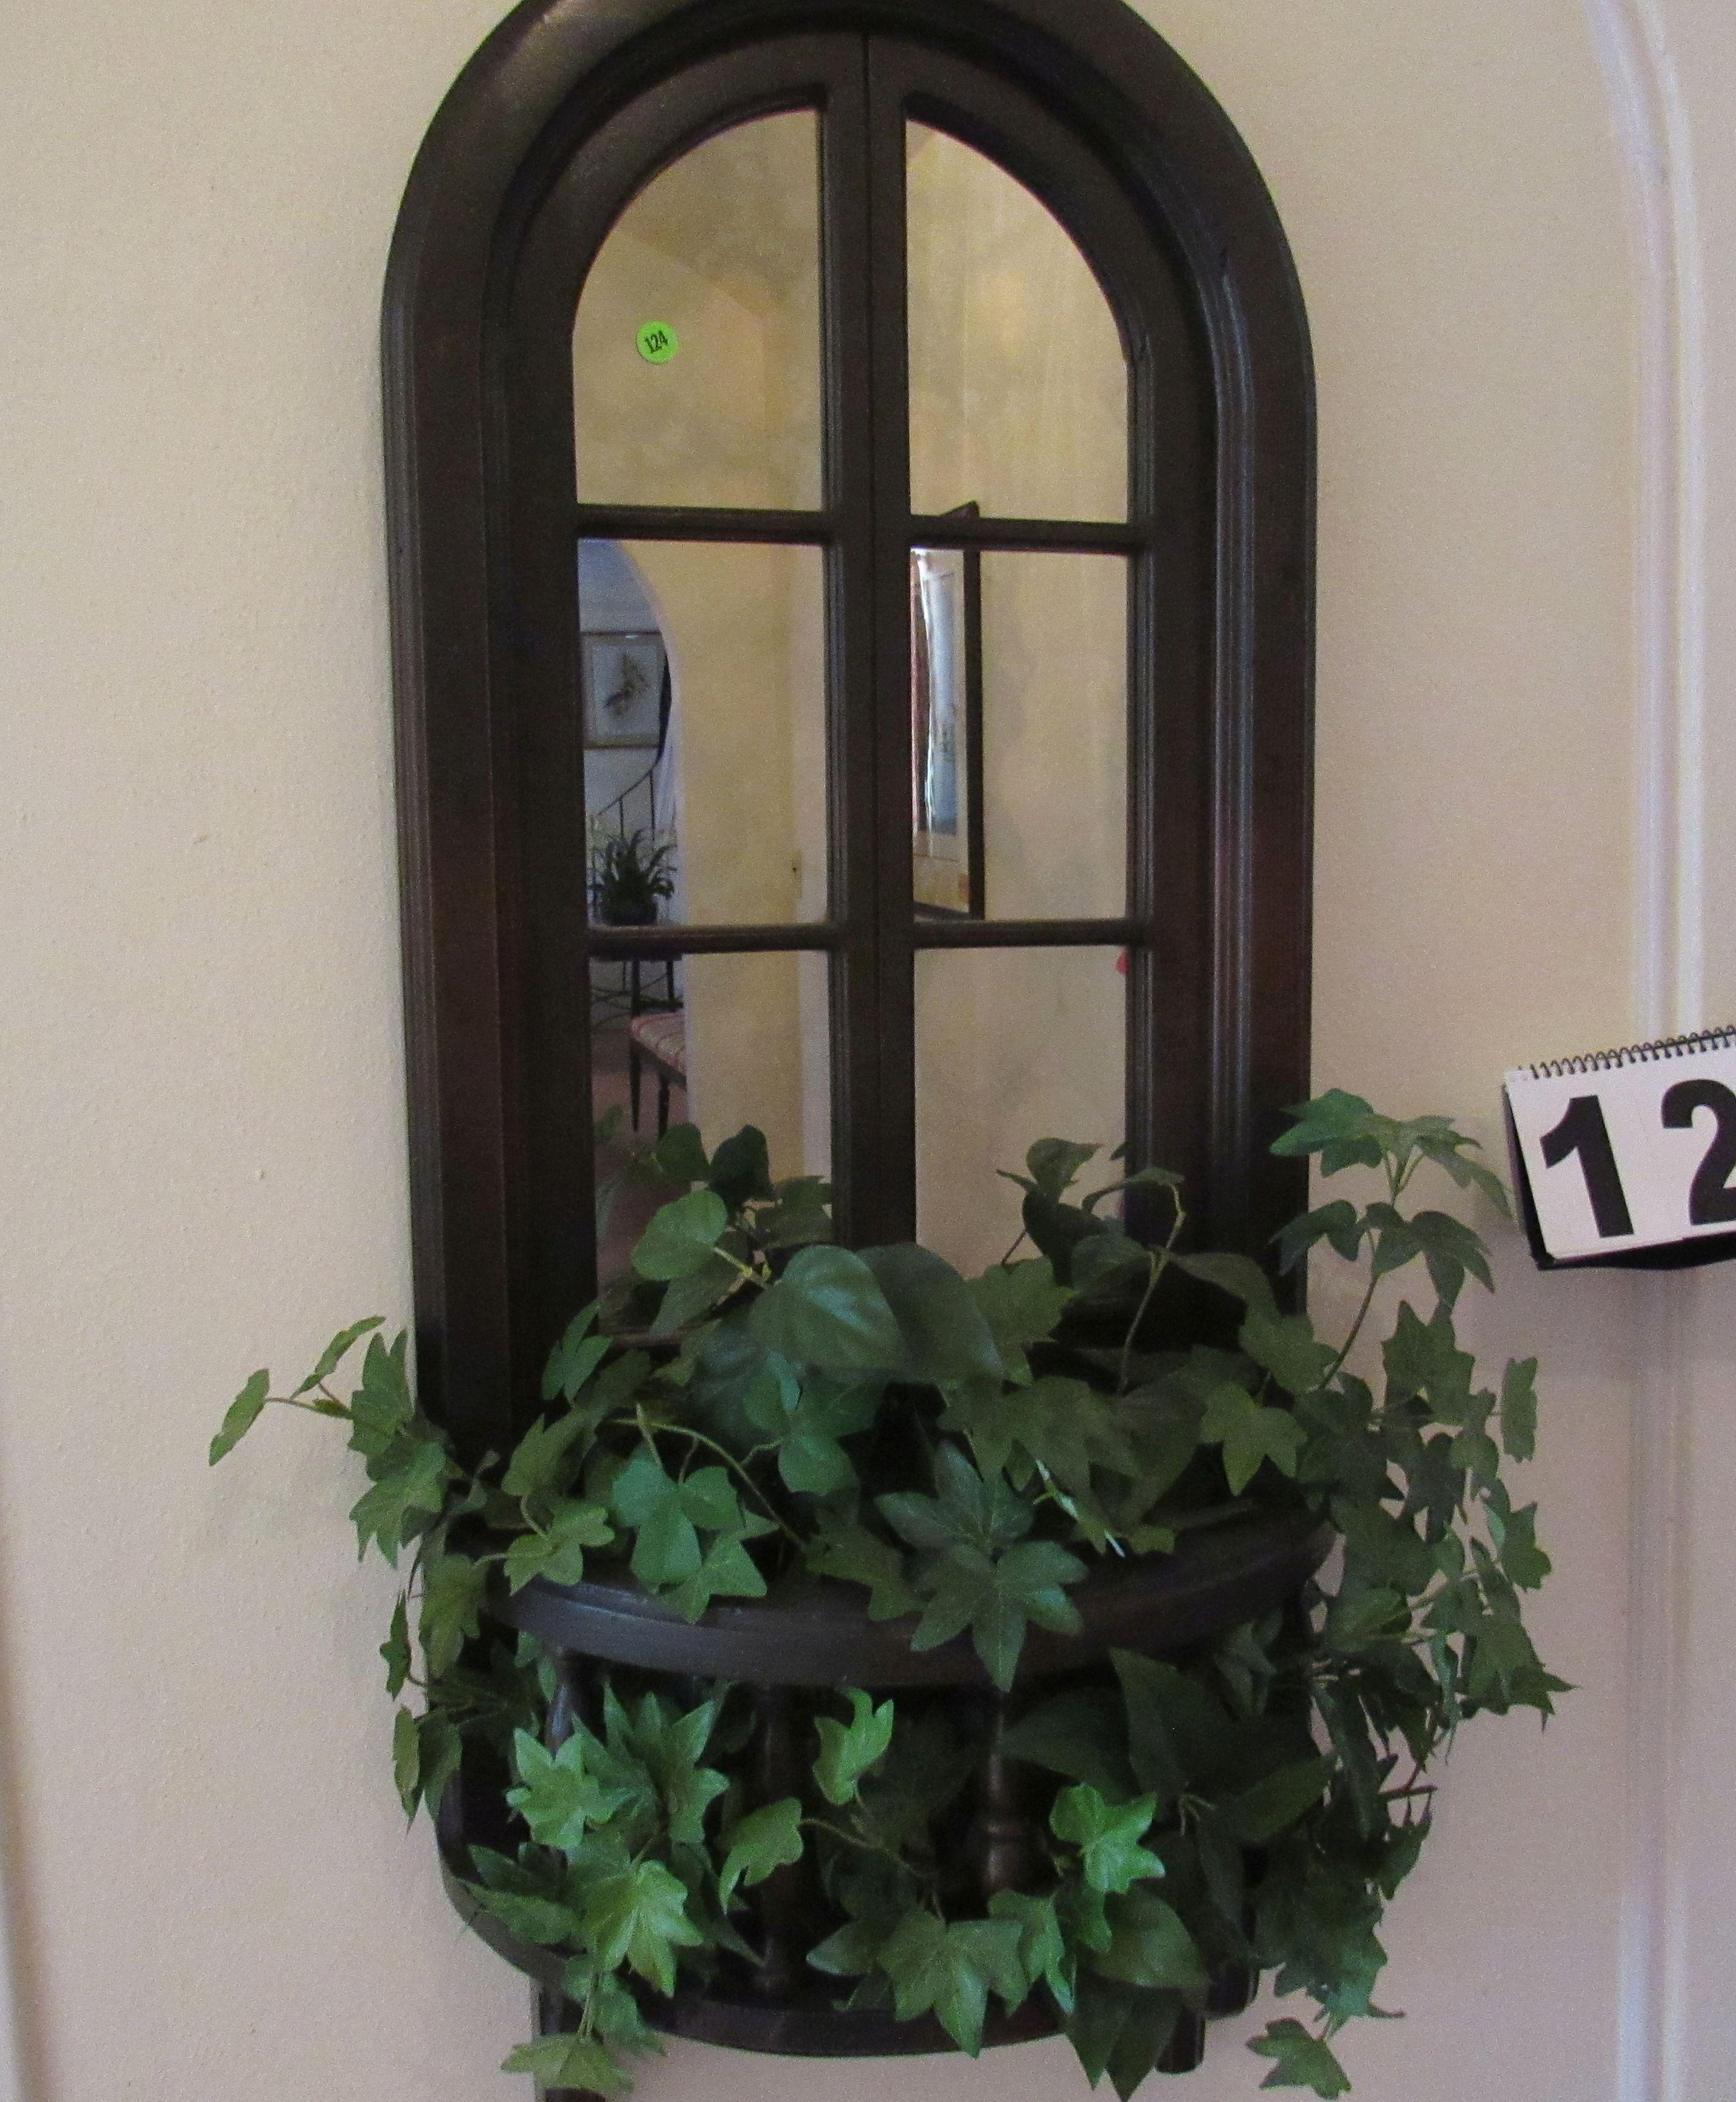 window mirror with artificial greenery walnut finish frame 16" x 48"